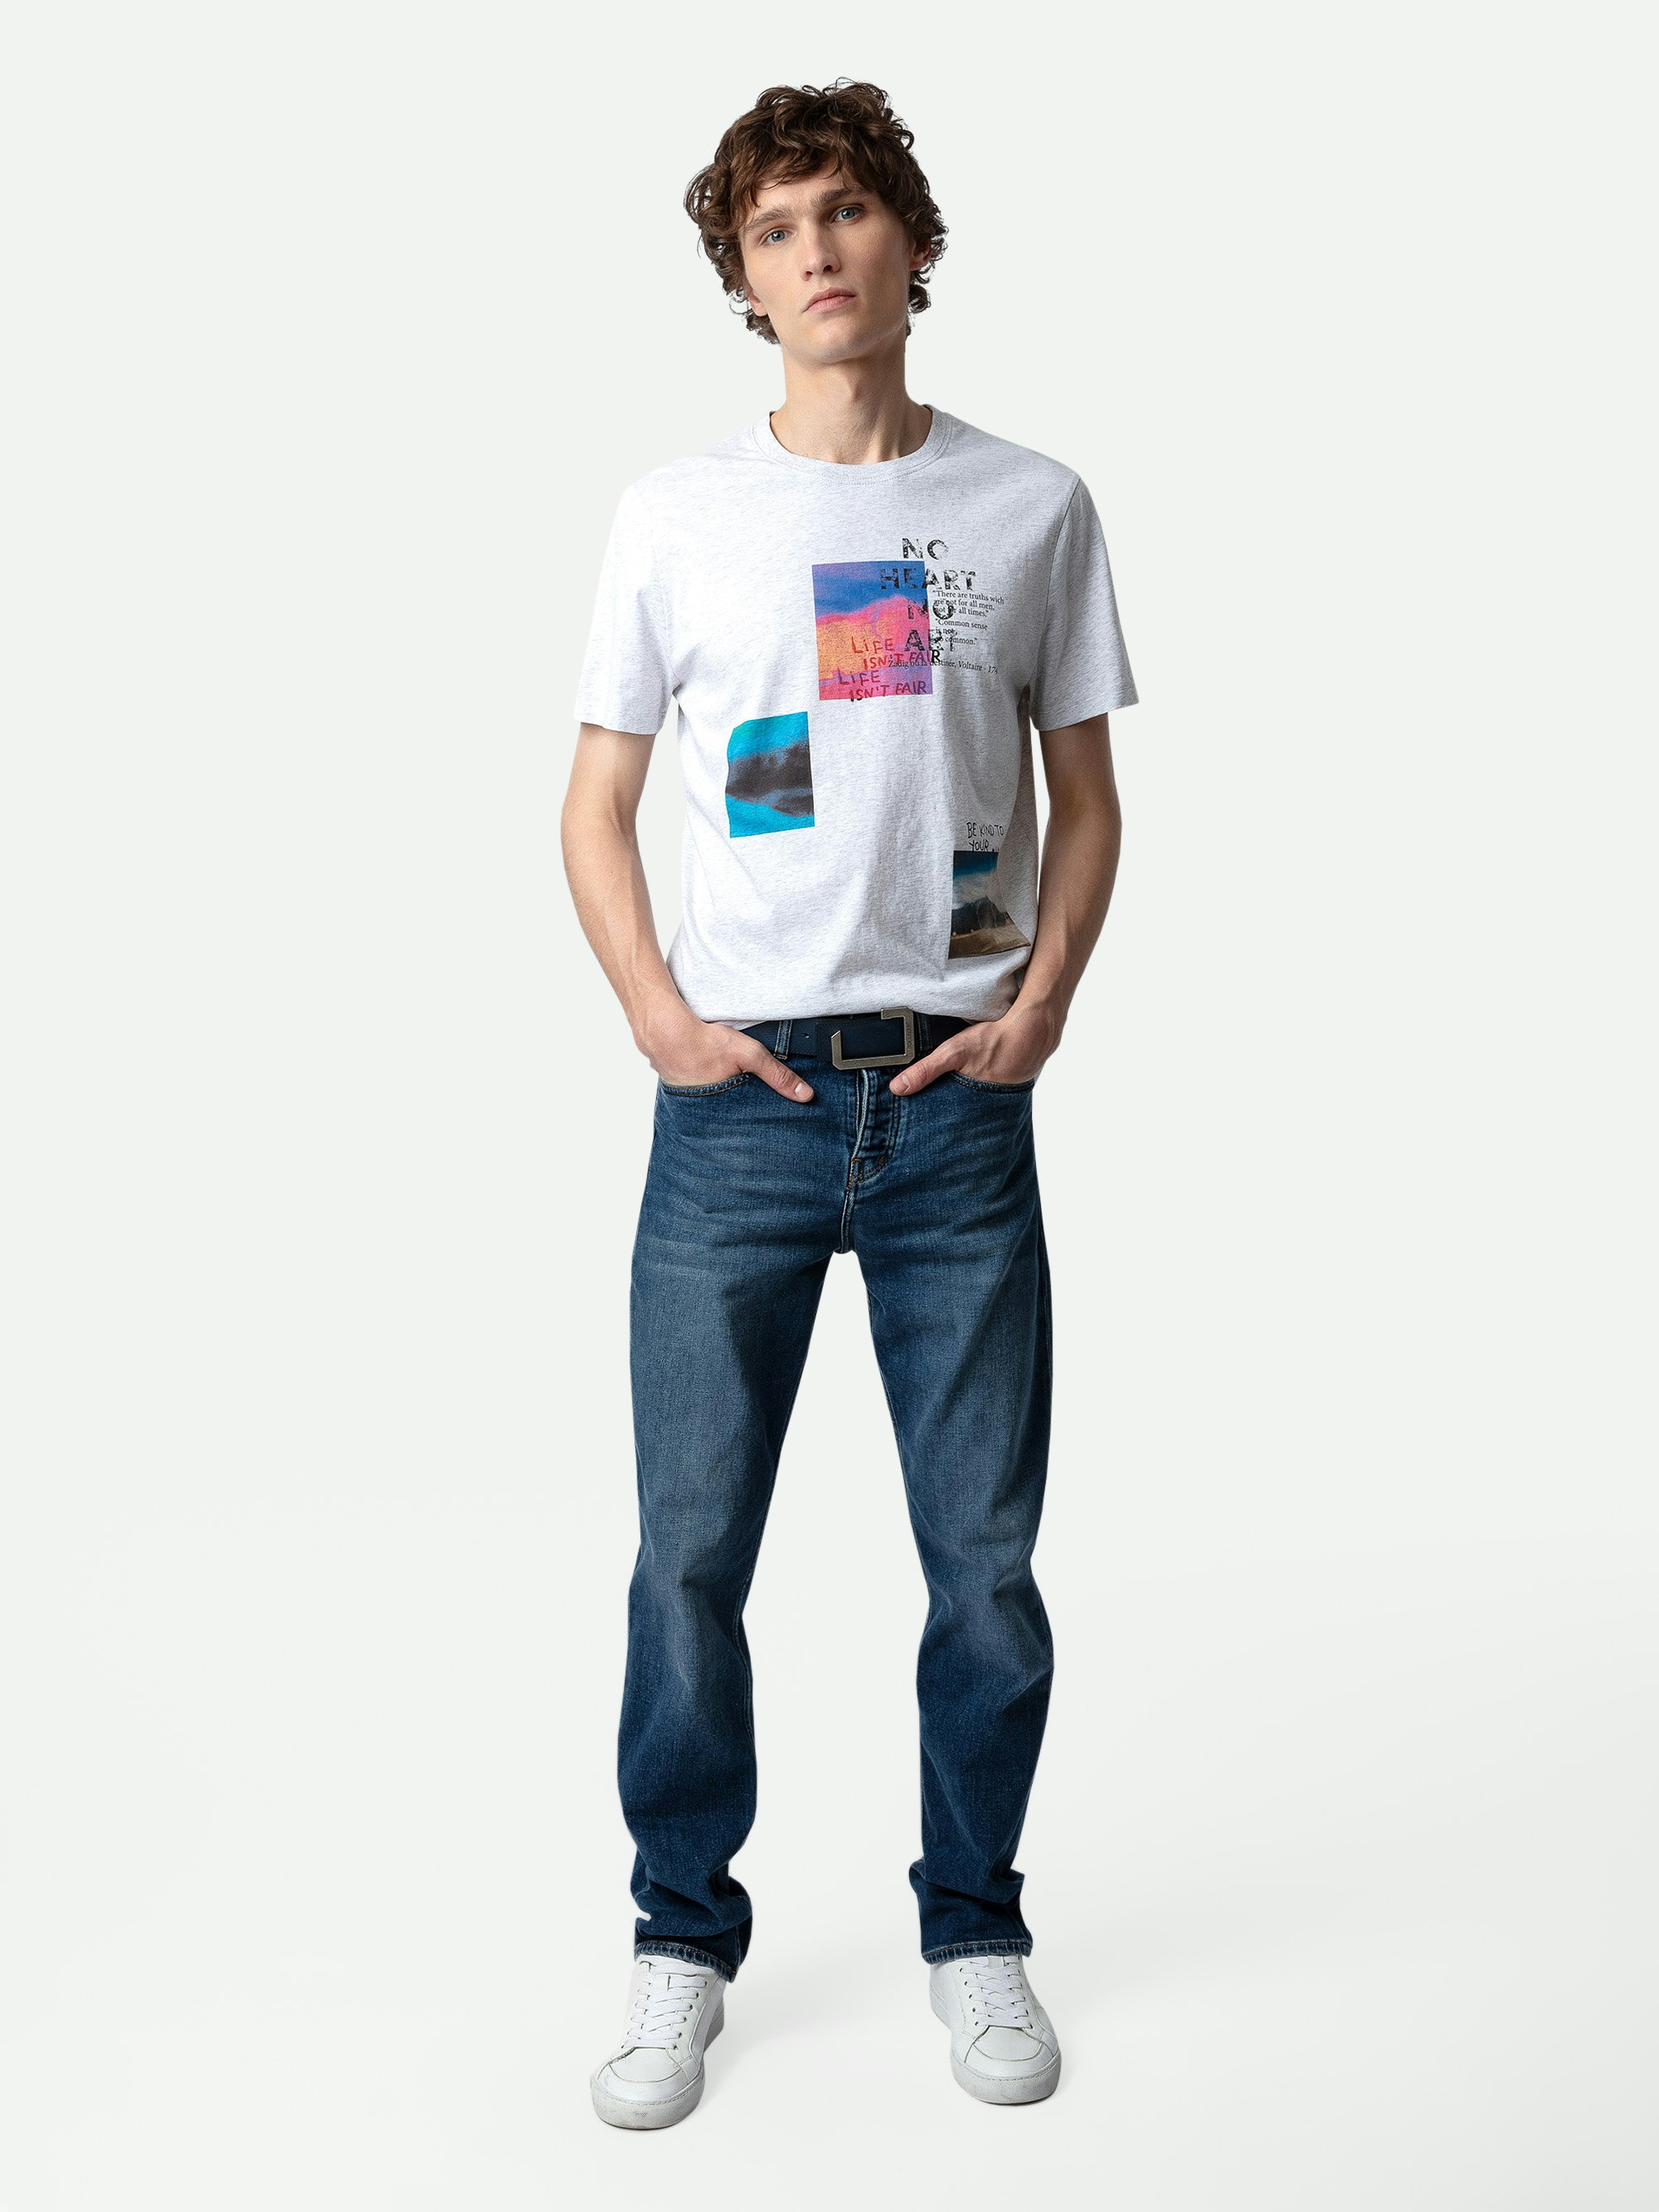 Camiseta con Estampado Fotográfico Ted - Camiseta de algodón de color gris jaspeado claro con cuello redondo, con estampado fotográfico Multiposter.